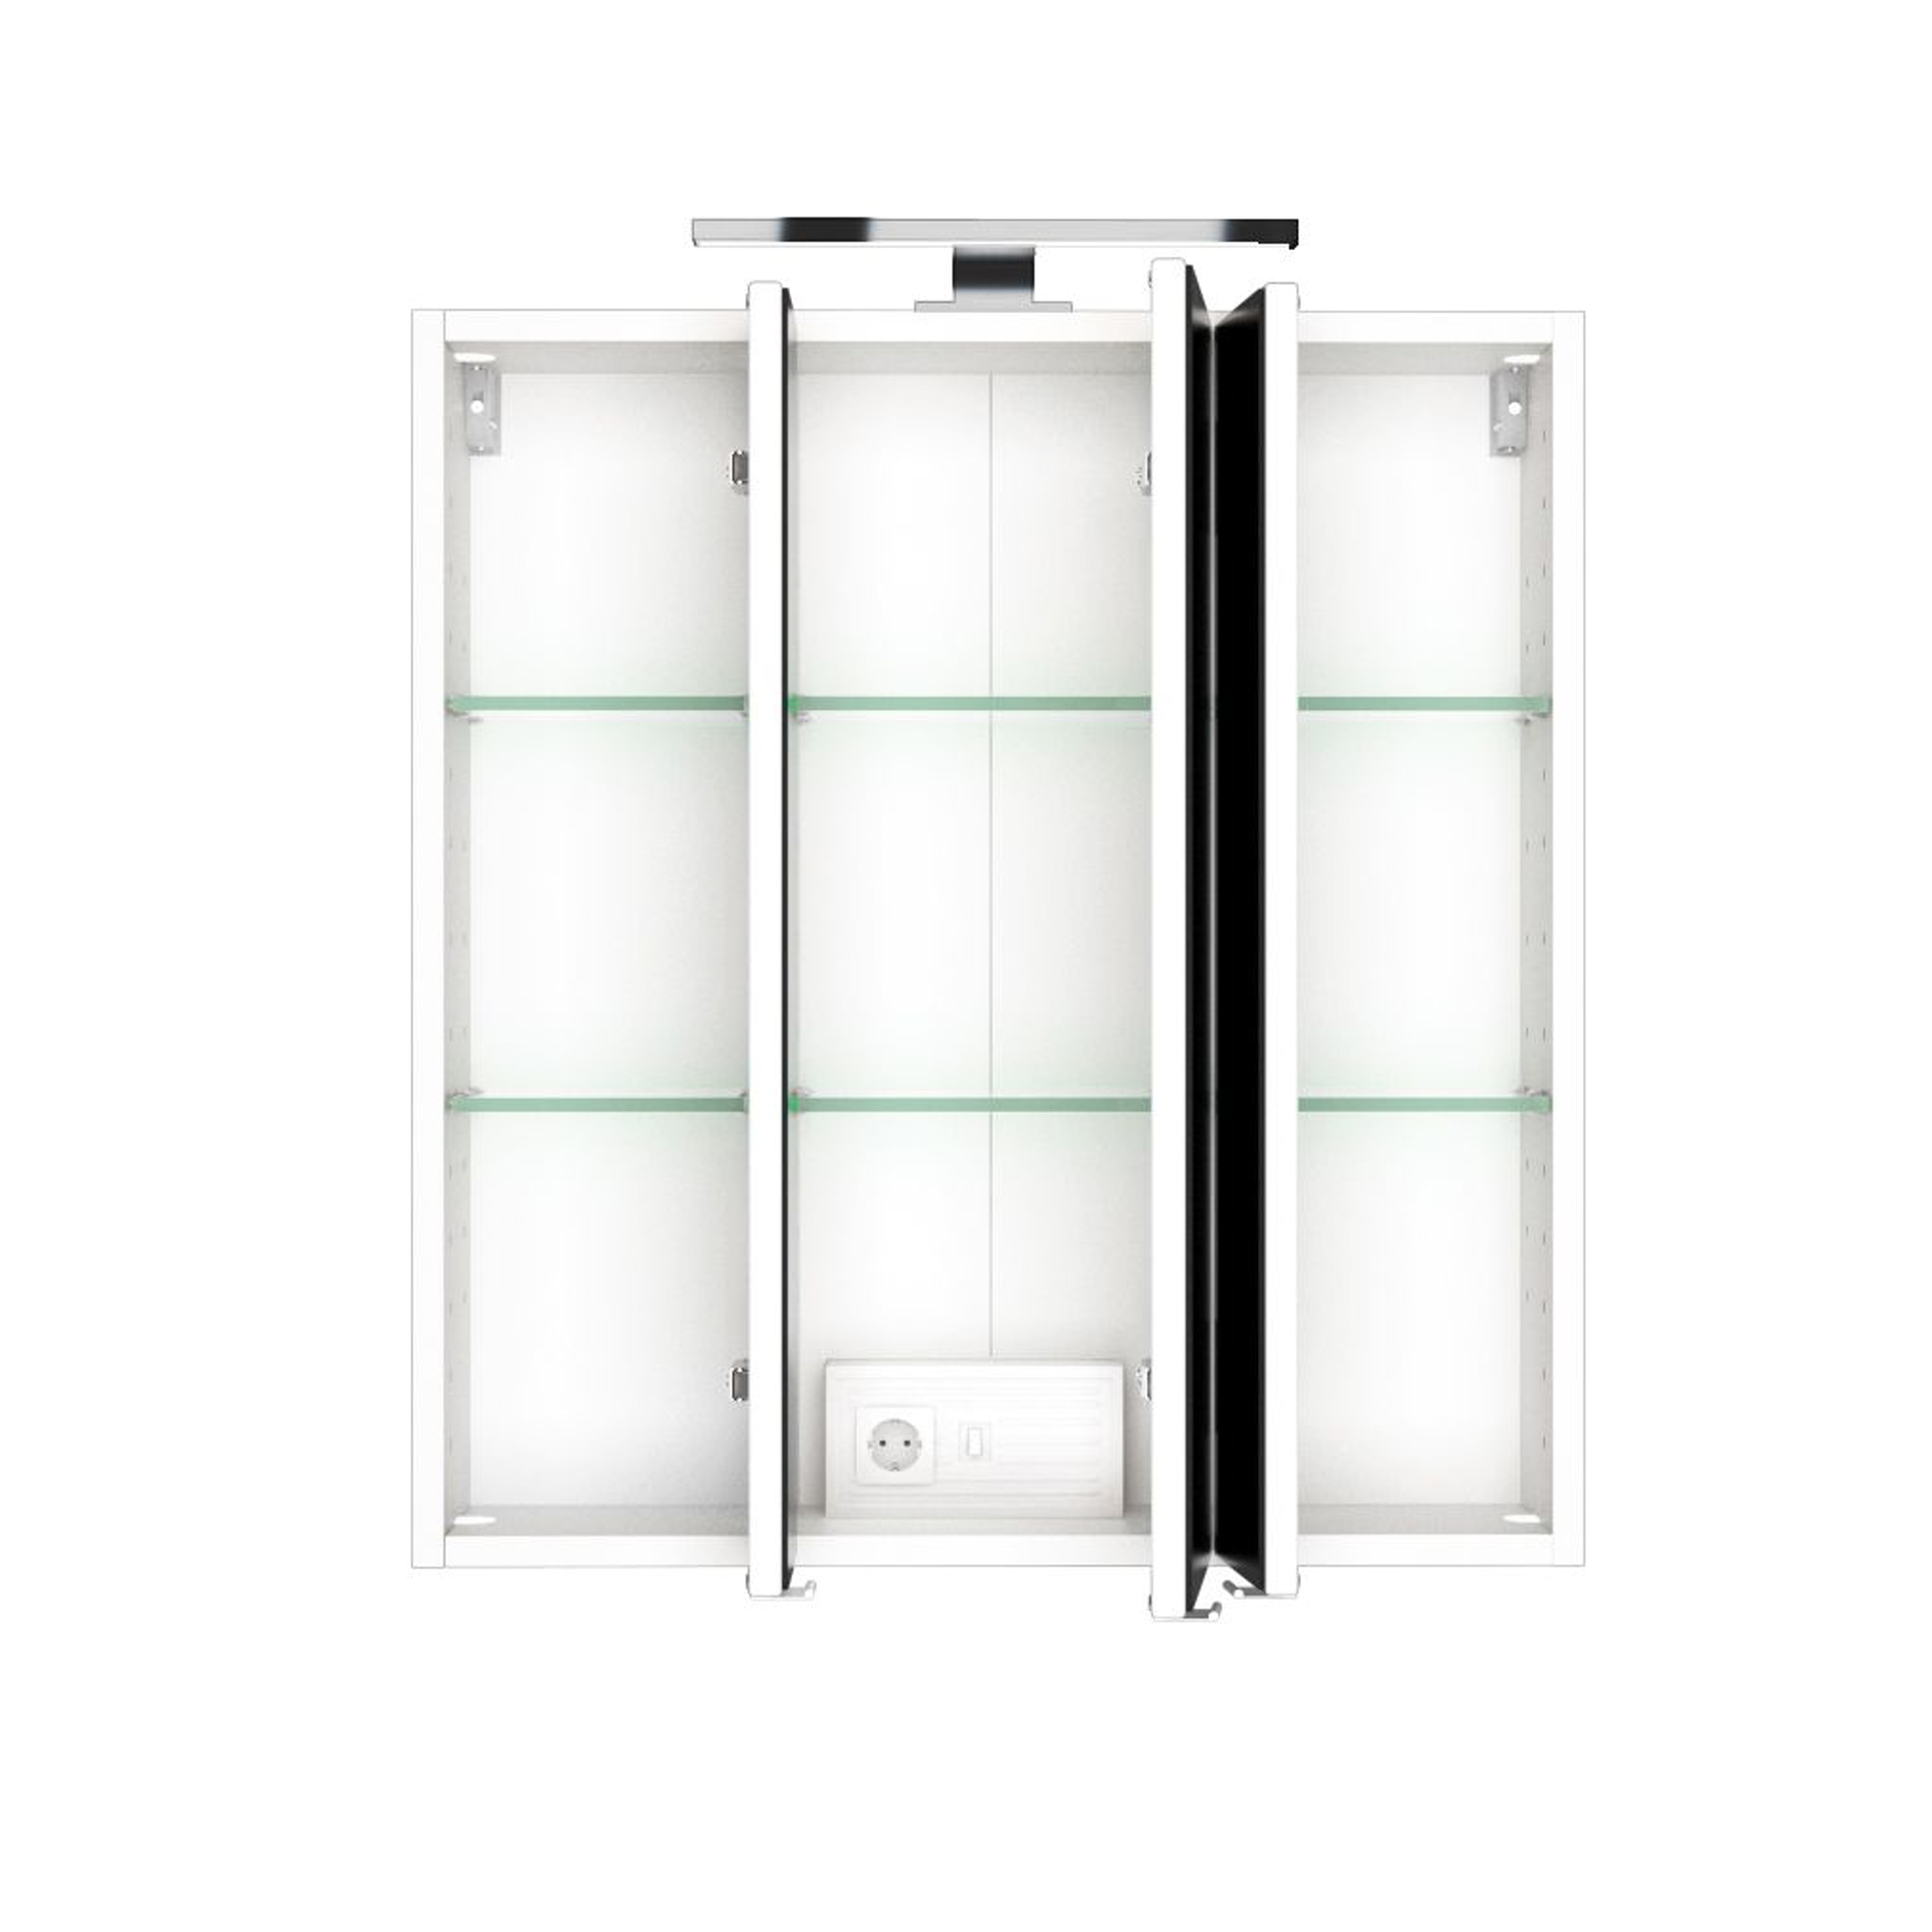 Bad-Spiegelschrank - 3-türig, mit Beleuchtung - 60 cm breit - Weiß | Spiegelschränke